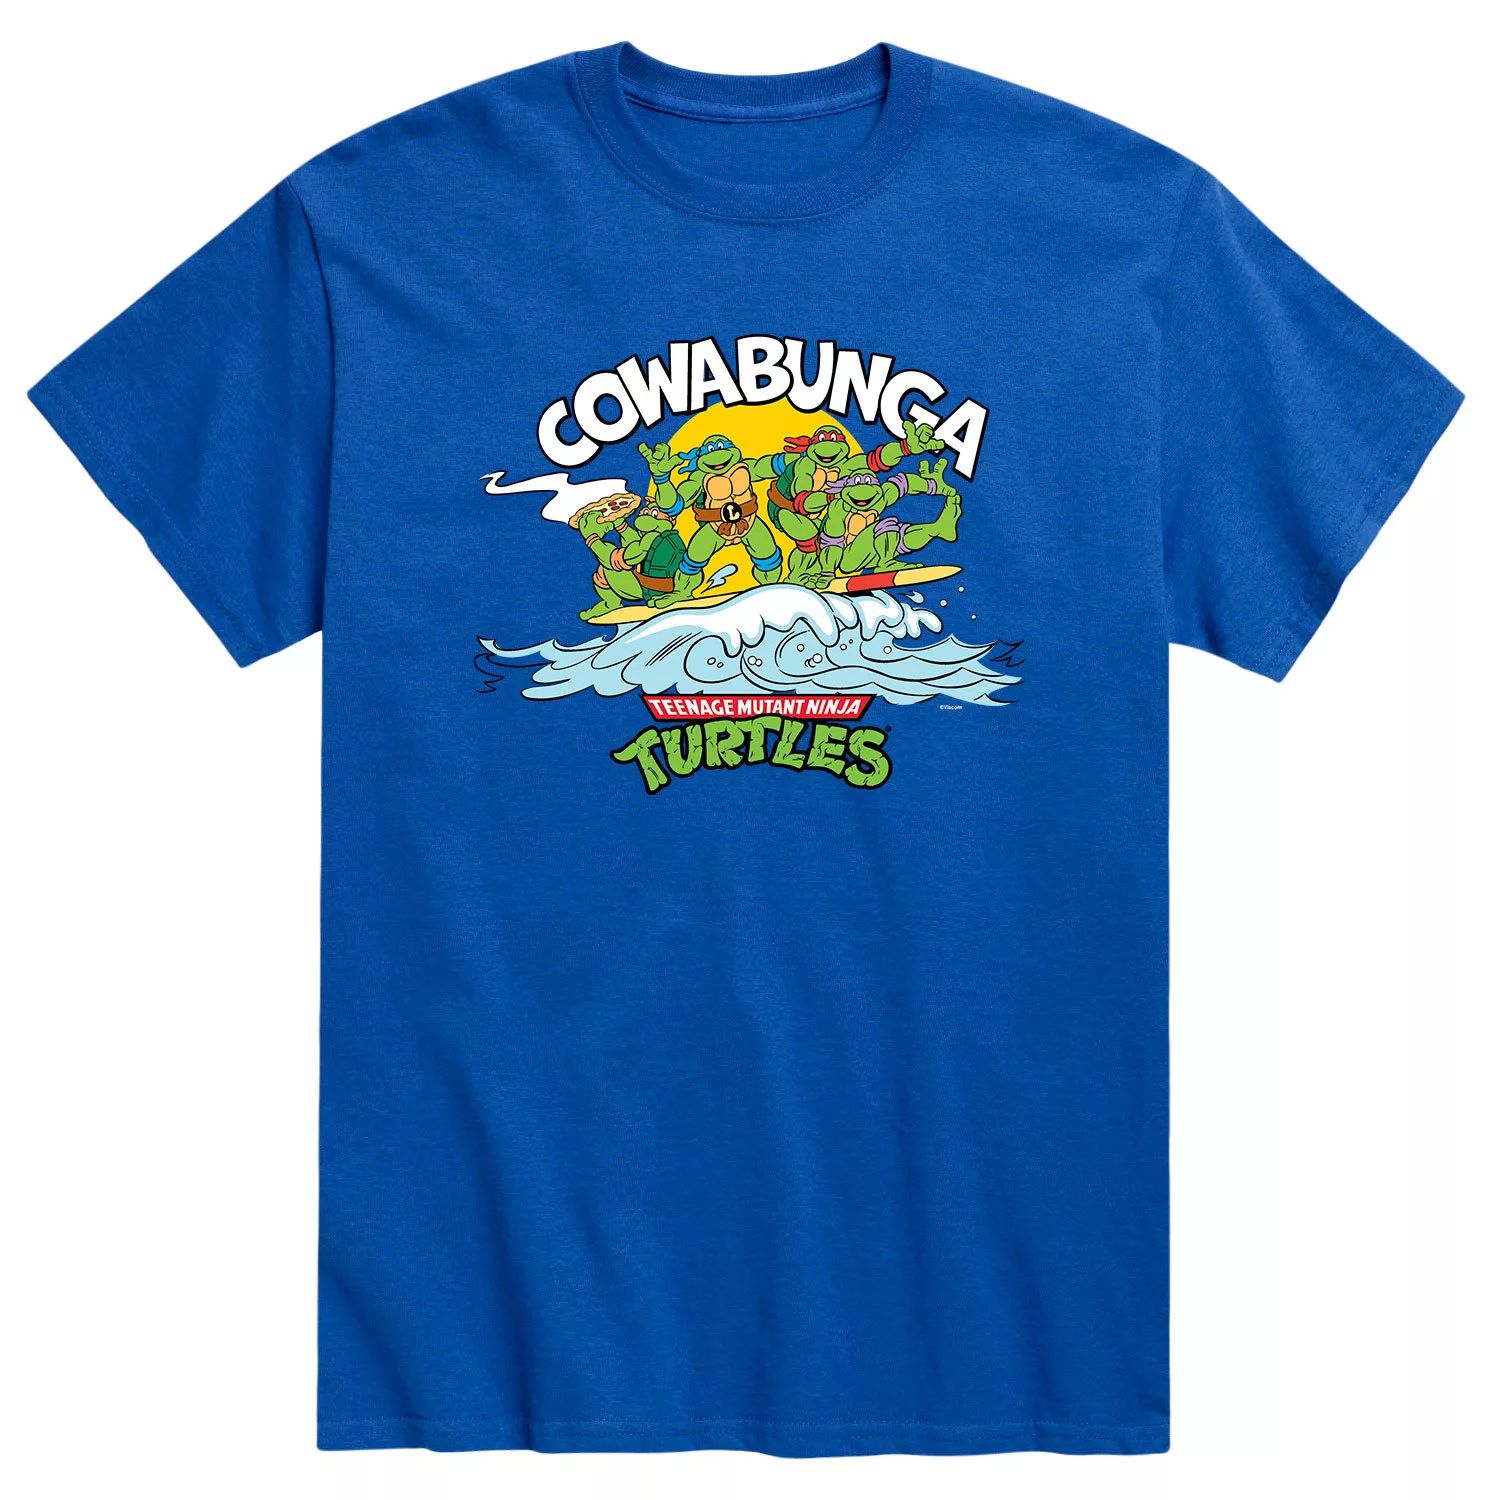 Мужская футболка Teenage Mutant Ninja Turtles Cowabunga Licensed Character набор teenage mutant ninja turtles cowabunga collection [ps4 английская версия] оружие игровое нож кунай 2 холодное пламя деревянный